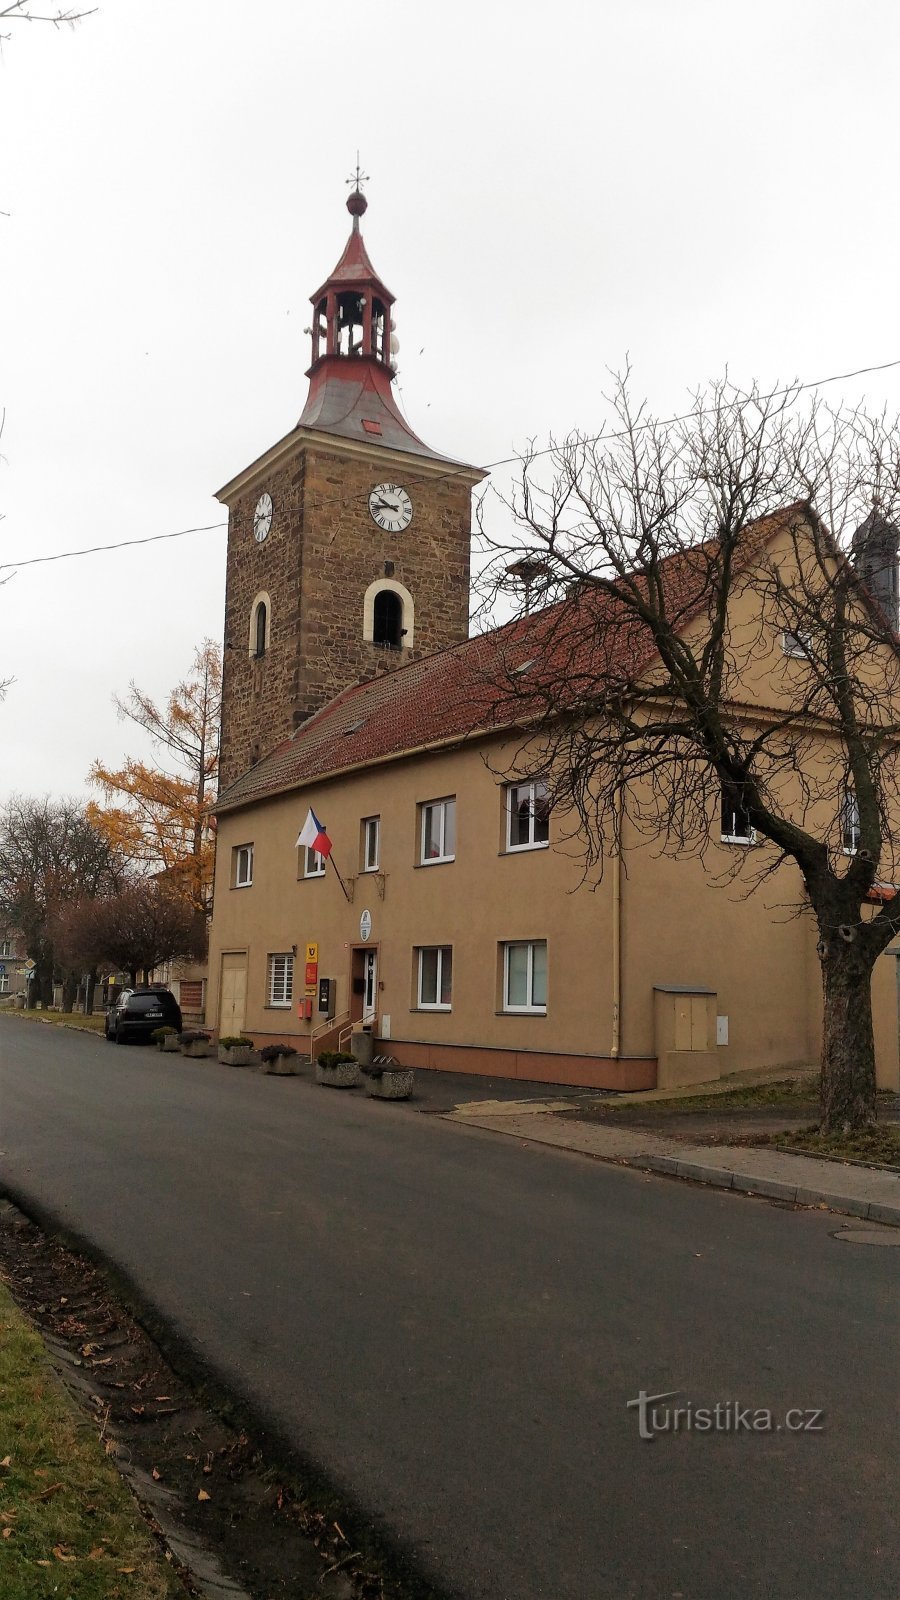 Tháp chuông ở Drožkovice.